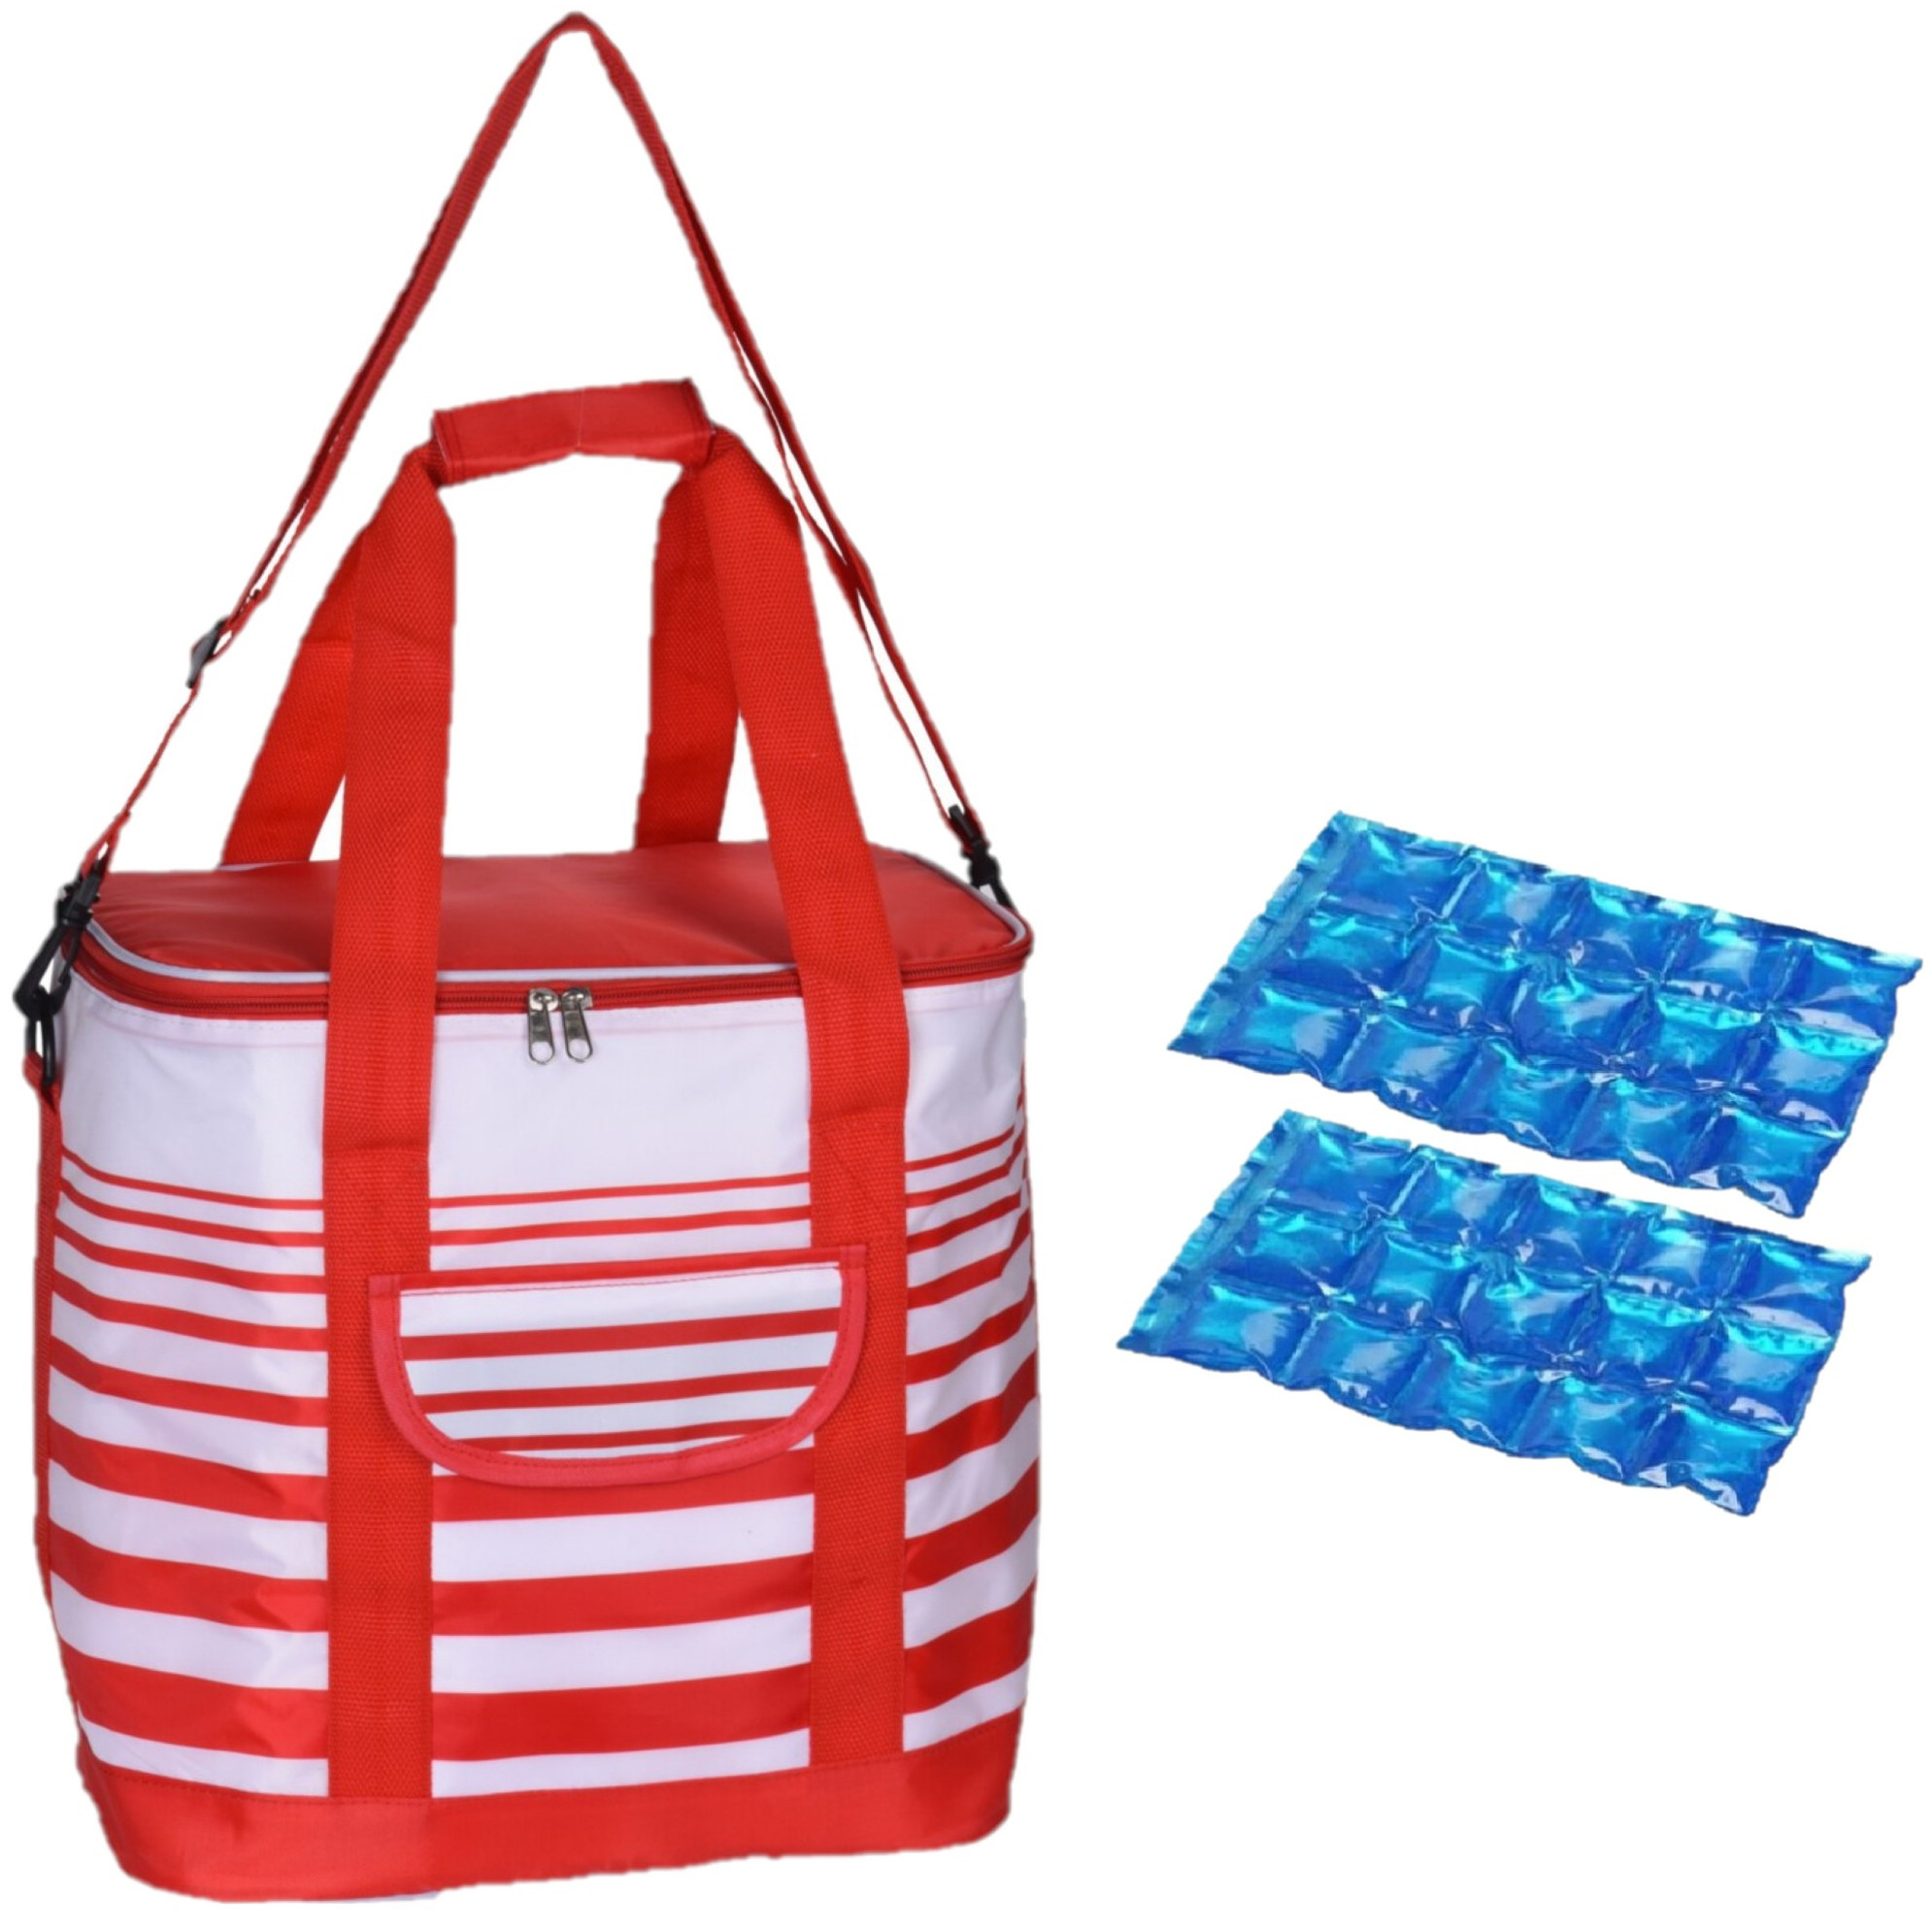 Grote koeltas draagtas schoudertas rood-wit gestreept met 2 stuks flexibele koelelementen 24 liter